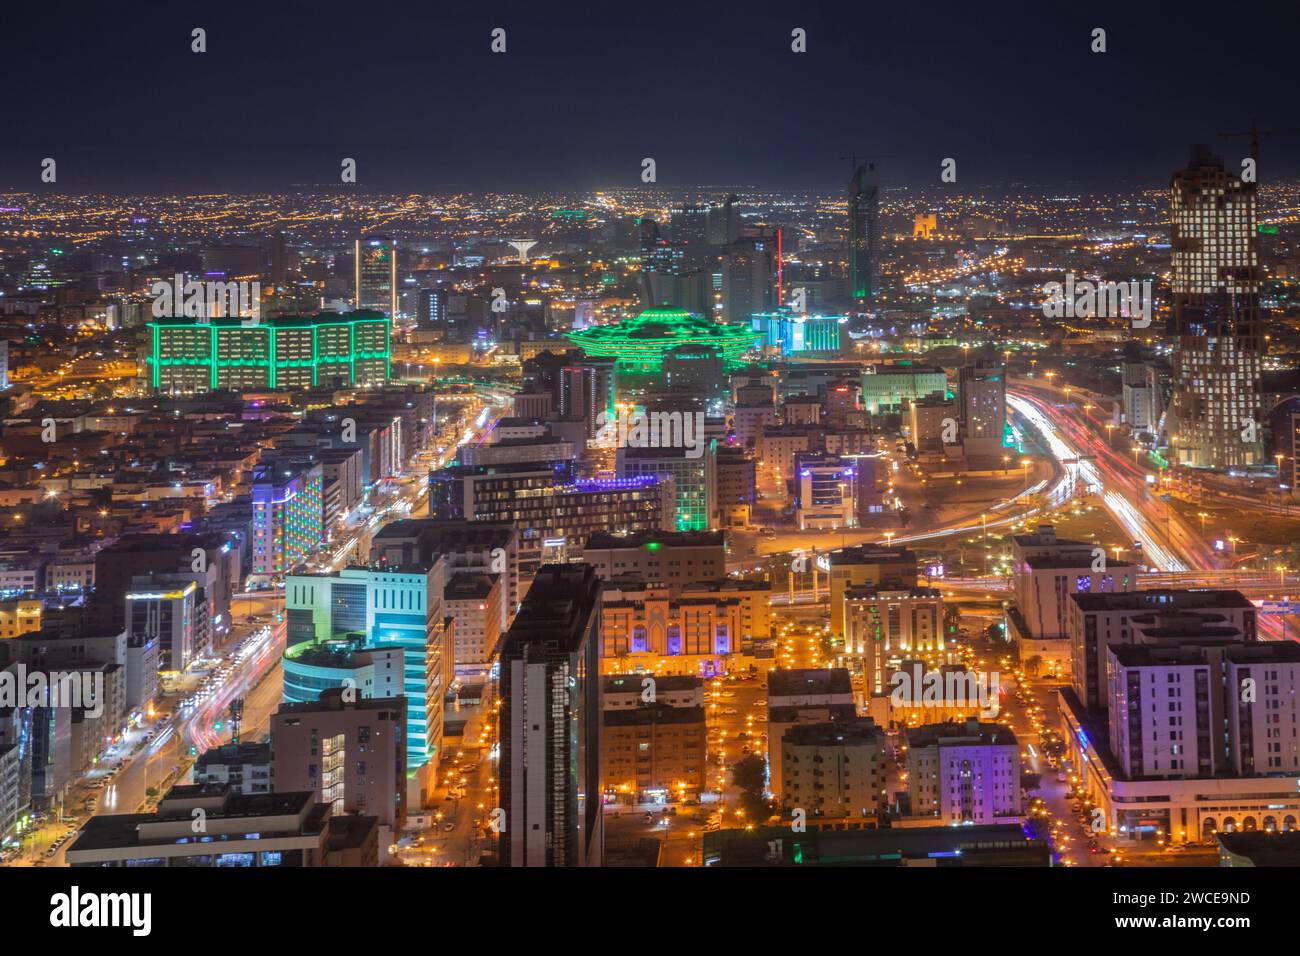 Nächtliches Panorama des Stadtzentrums von Riad, Al Riad, Saudi-Arabien Stockfoto